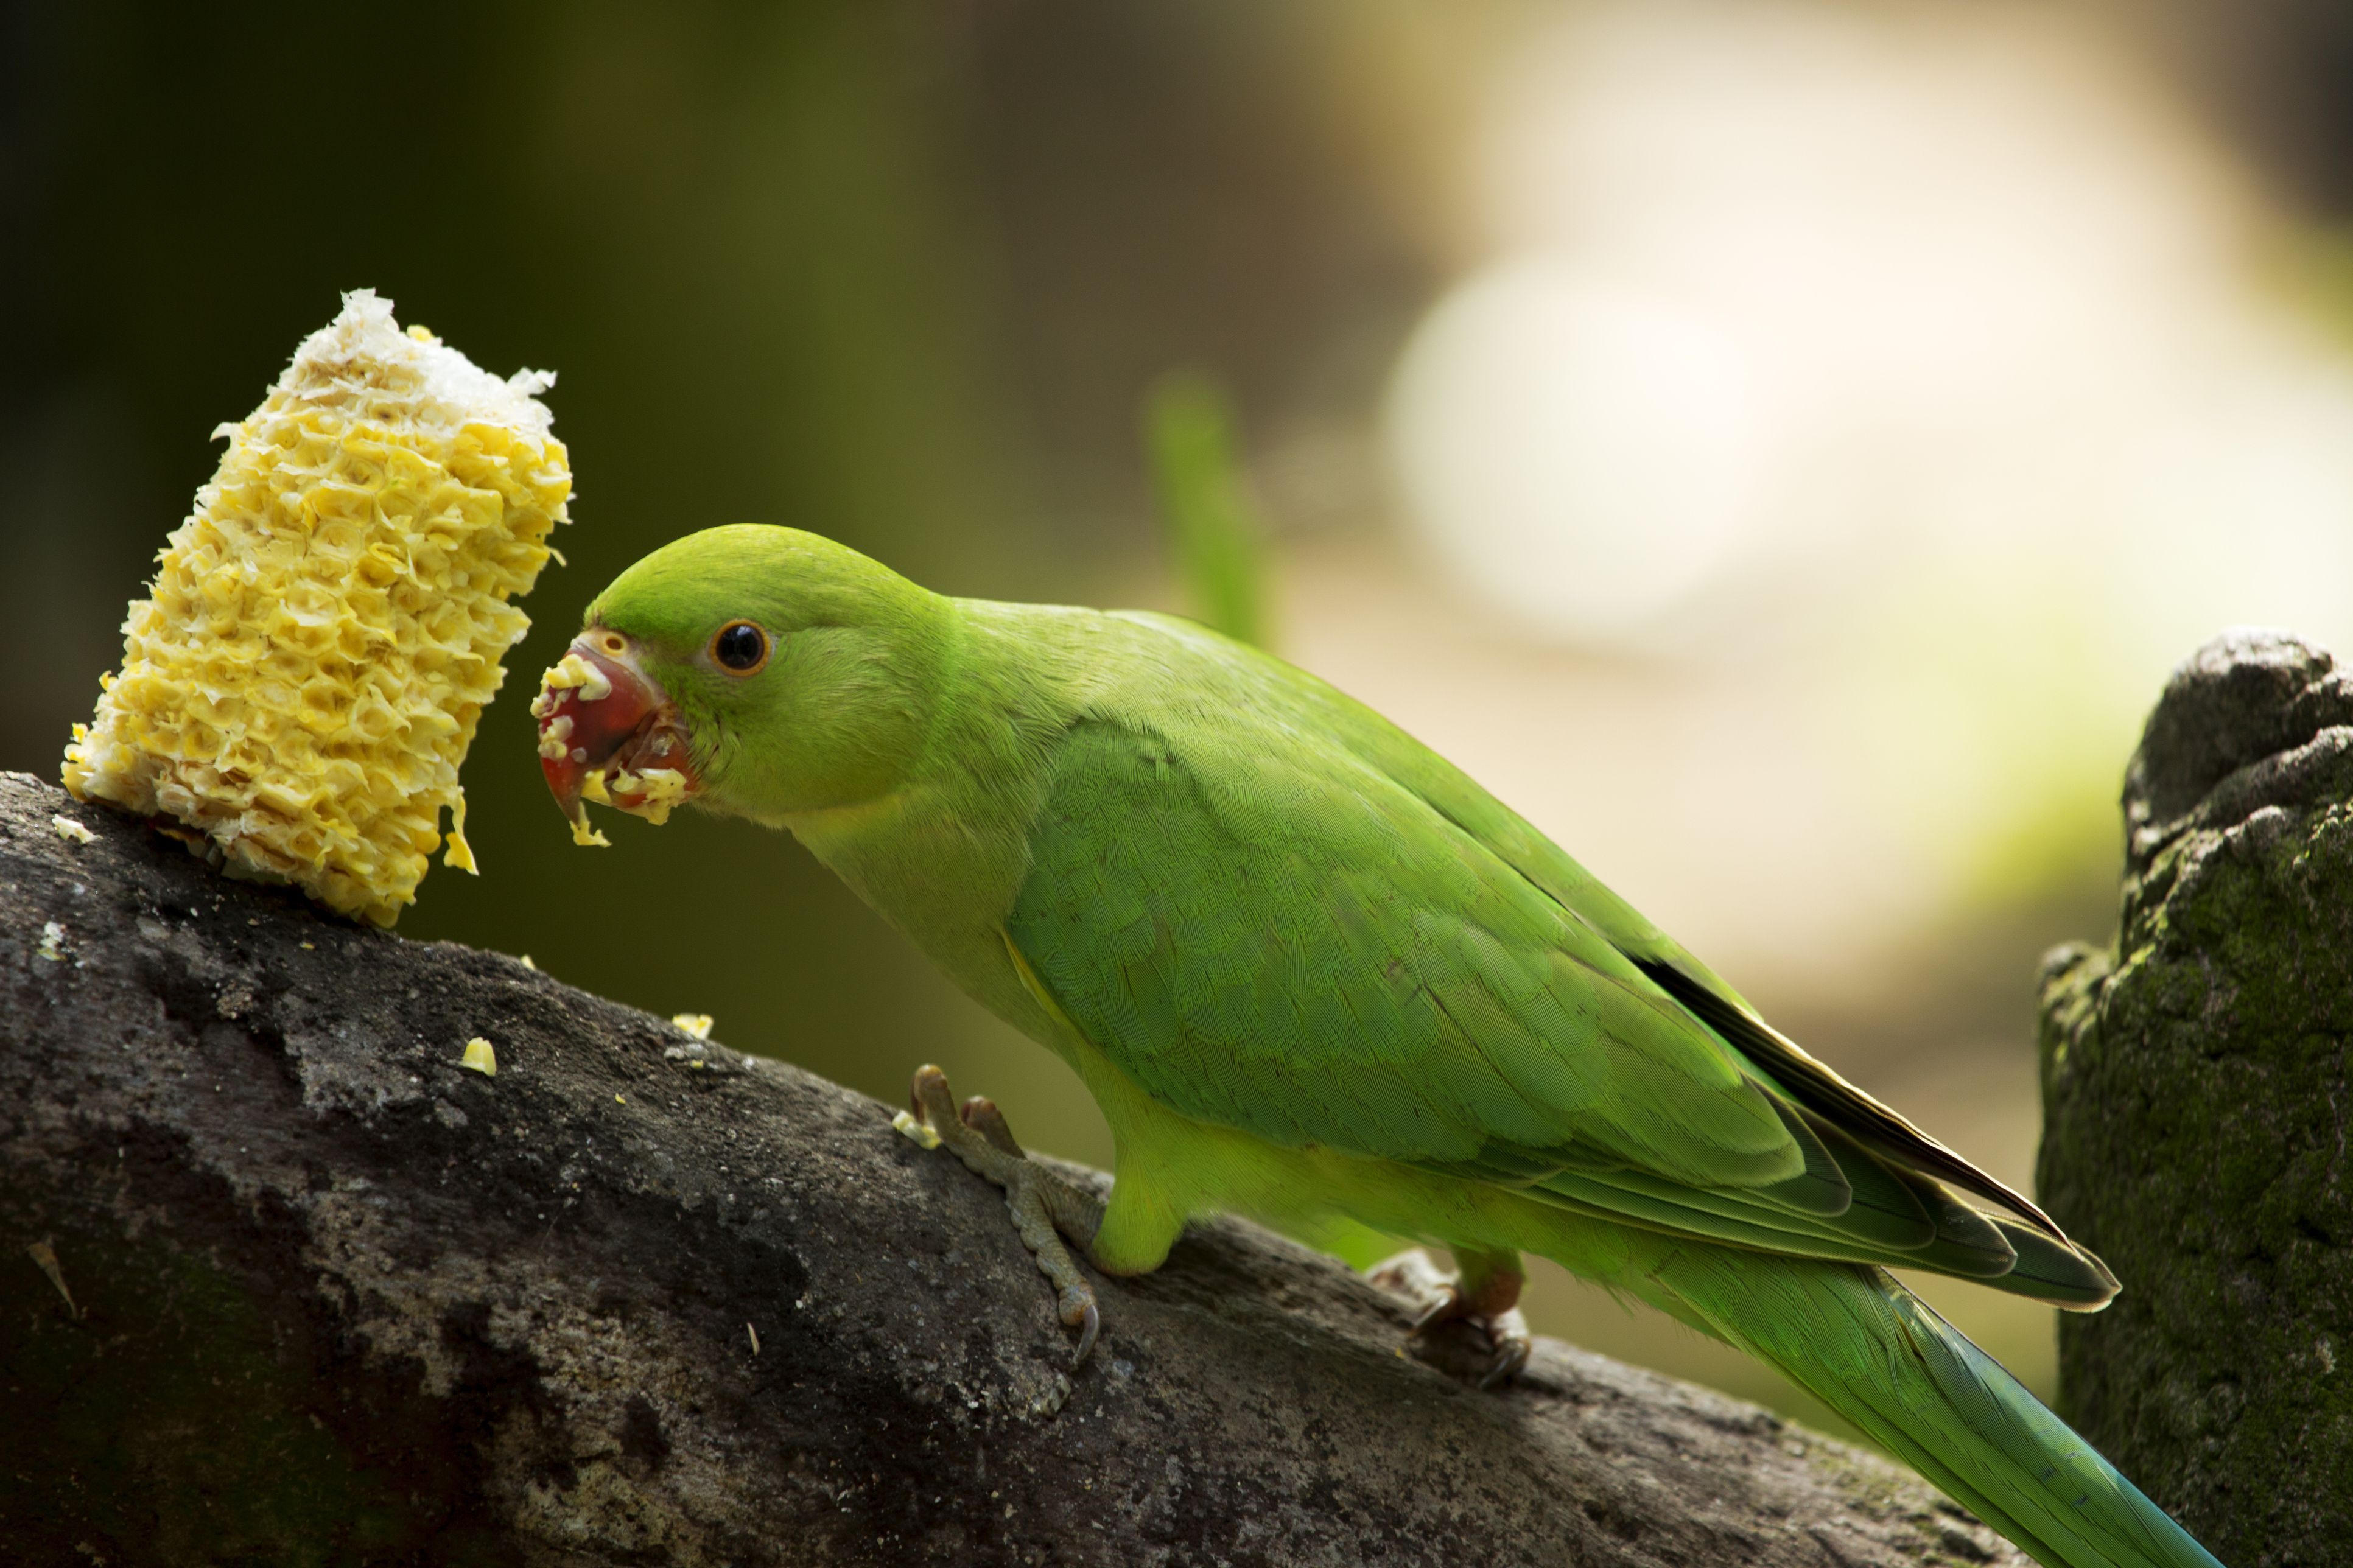 Green parrot bird eating corn